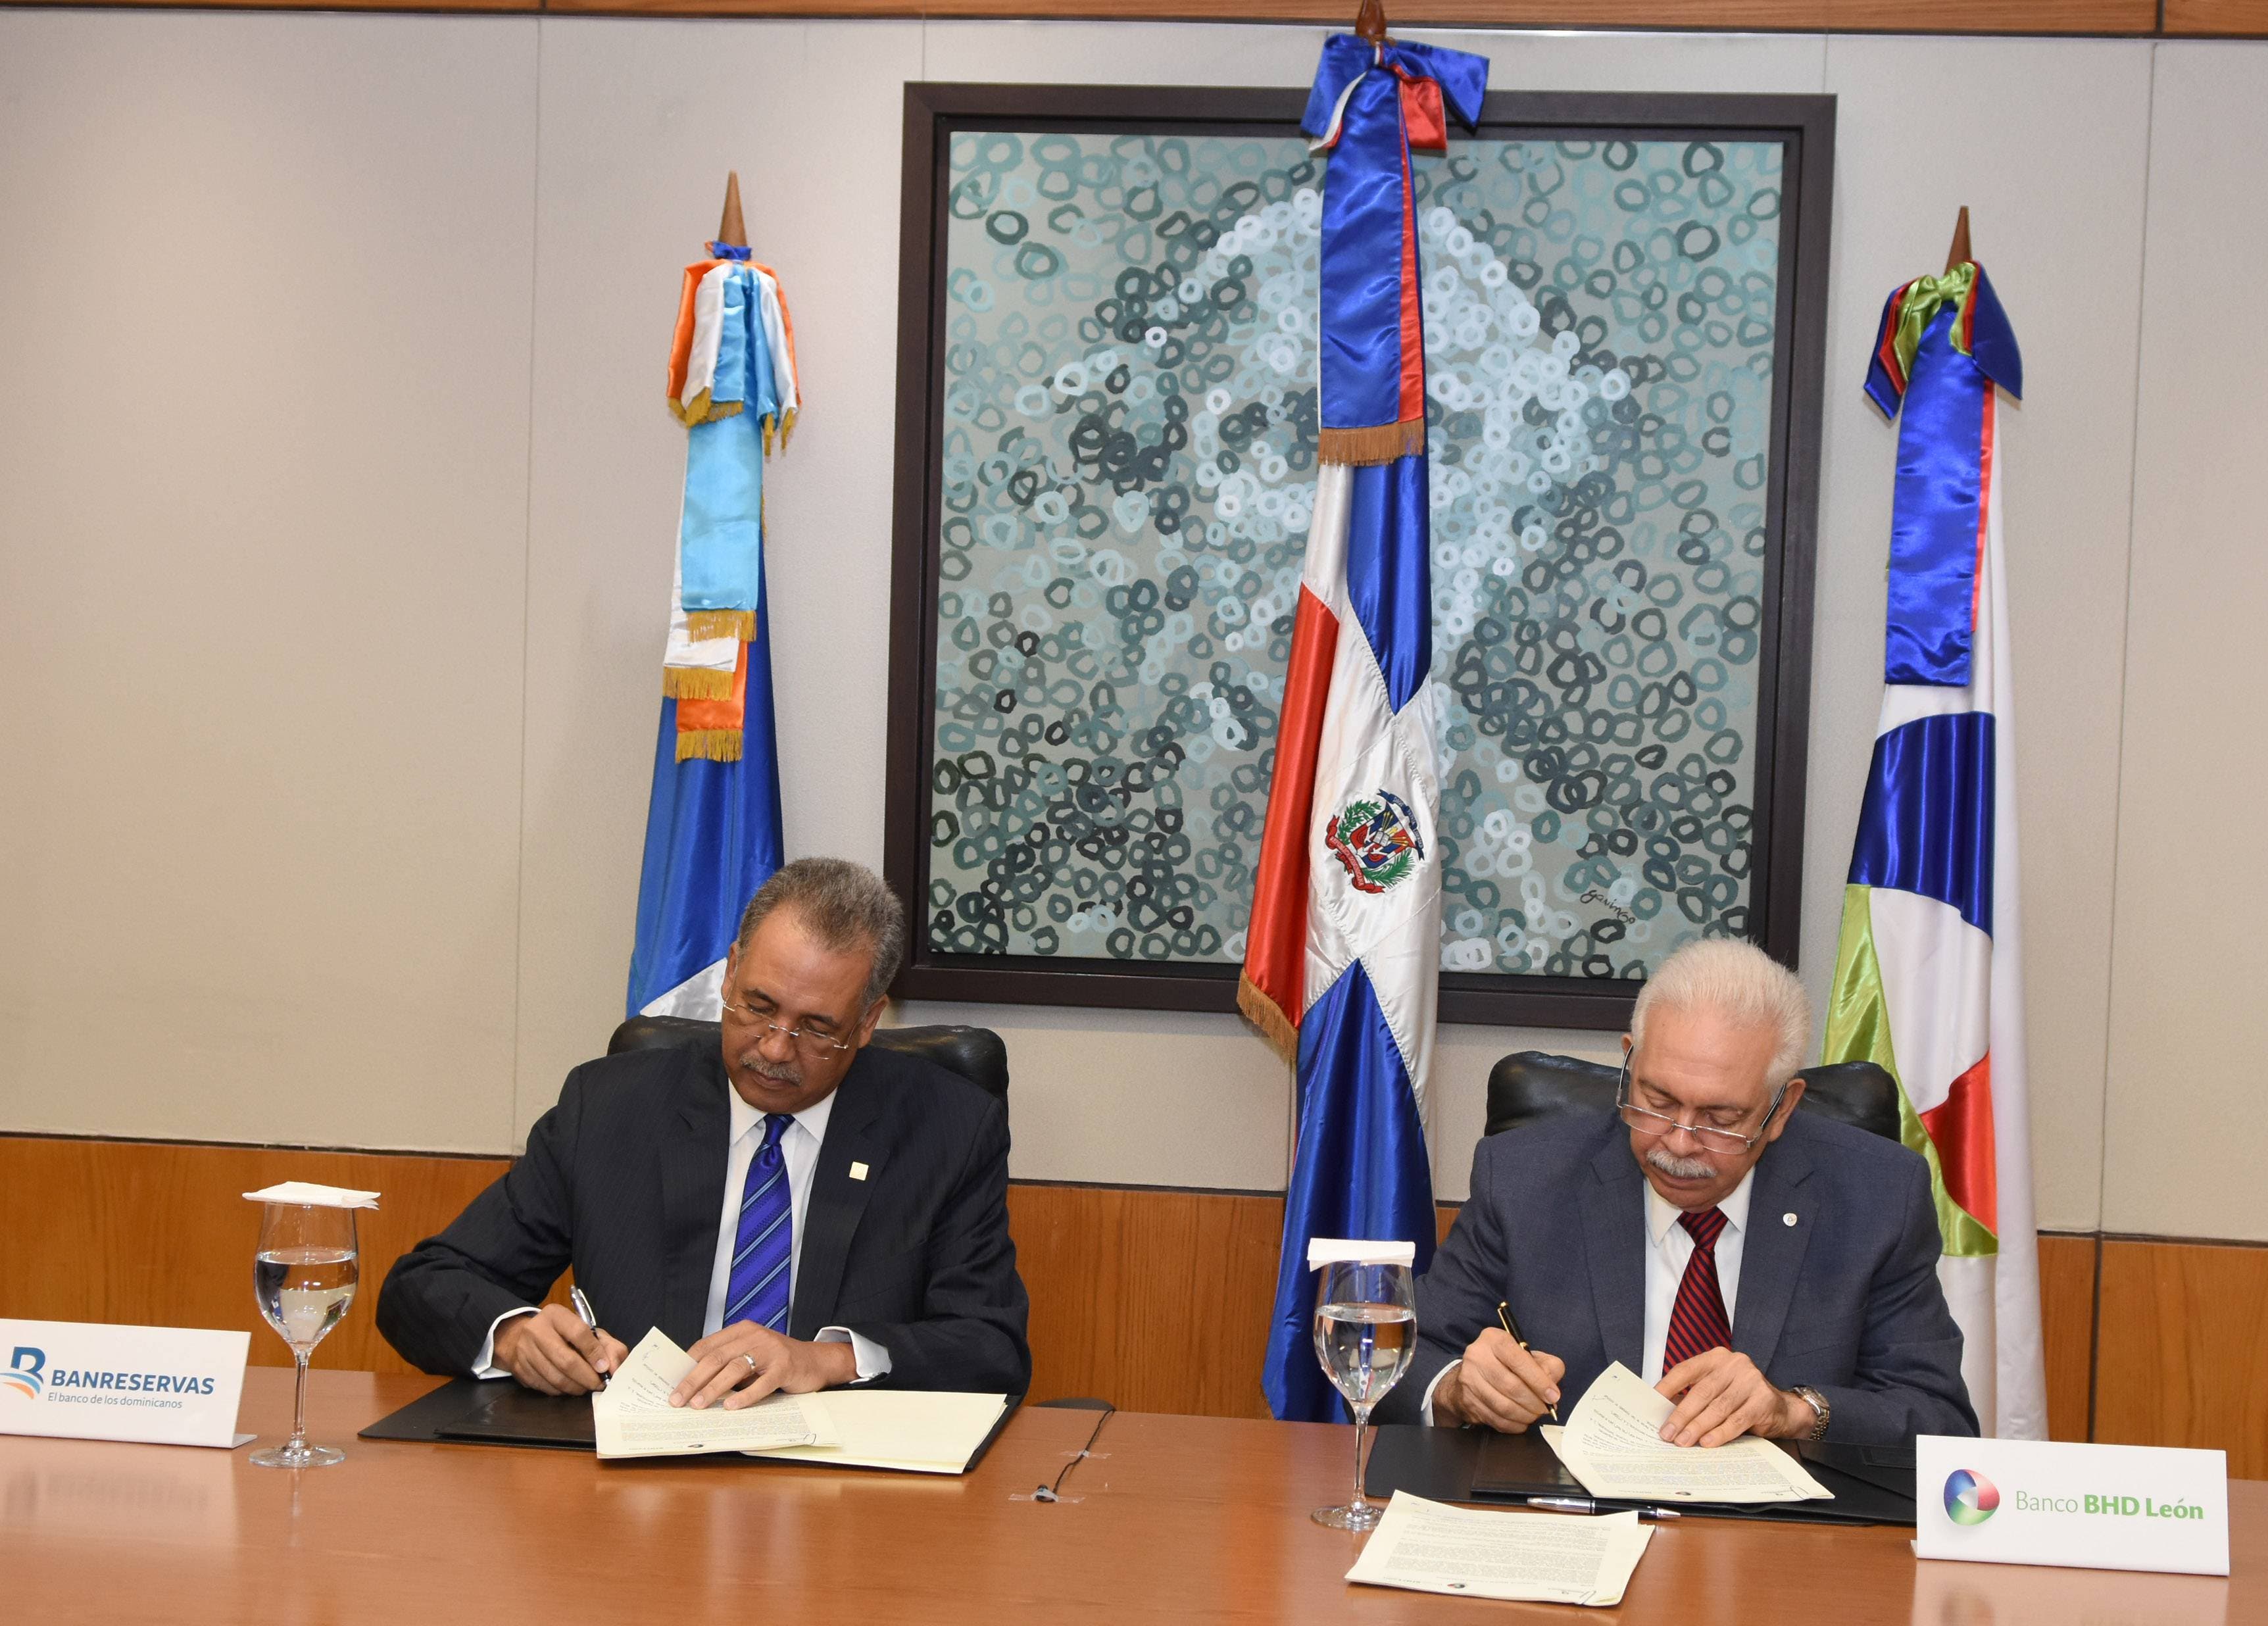 Banreservas y BHD León firman acuerdo para crear la red de cajeros automáticos más grande del país